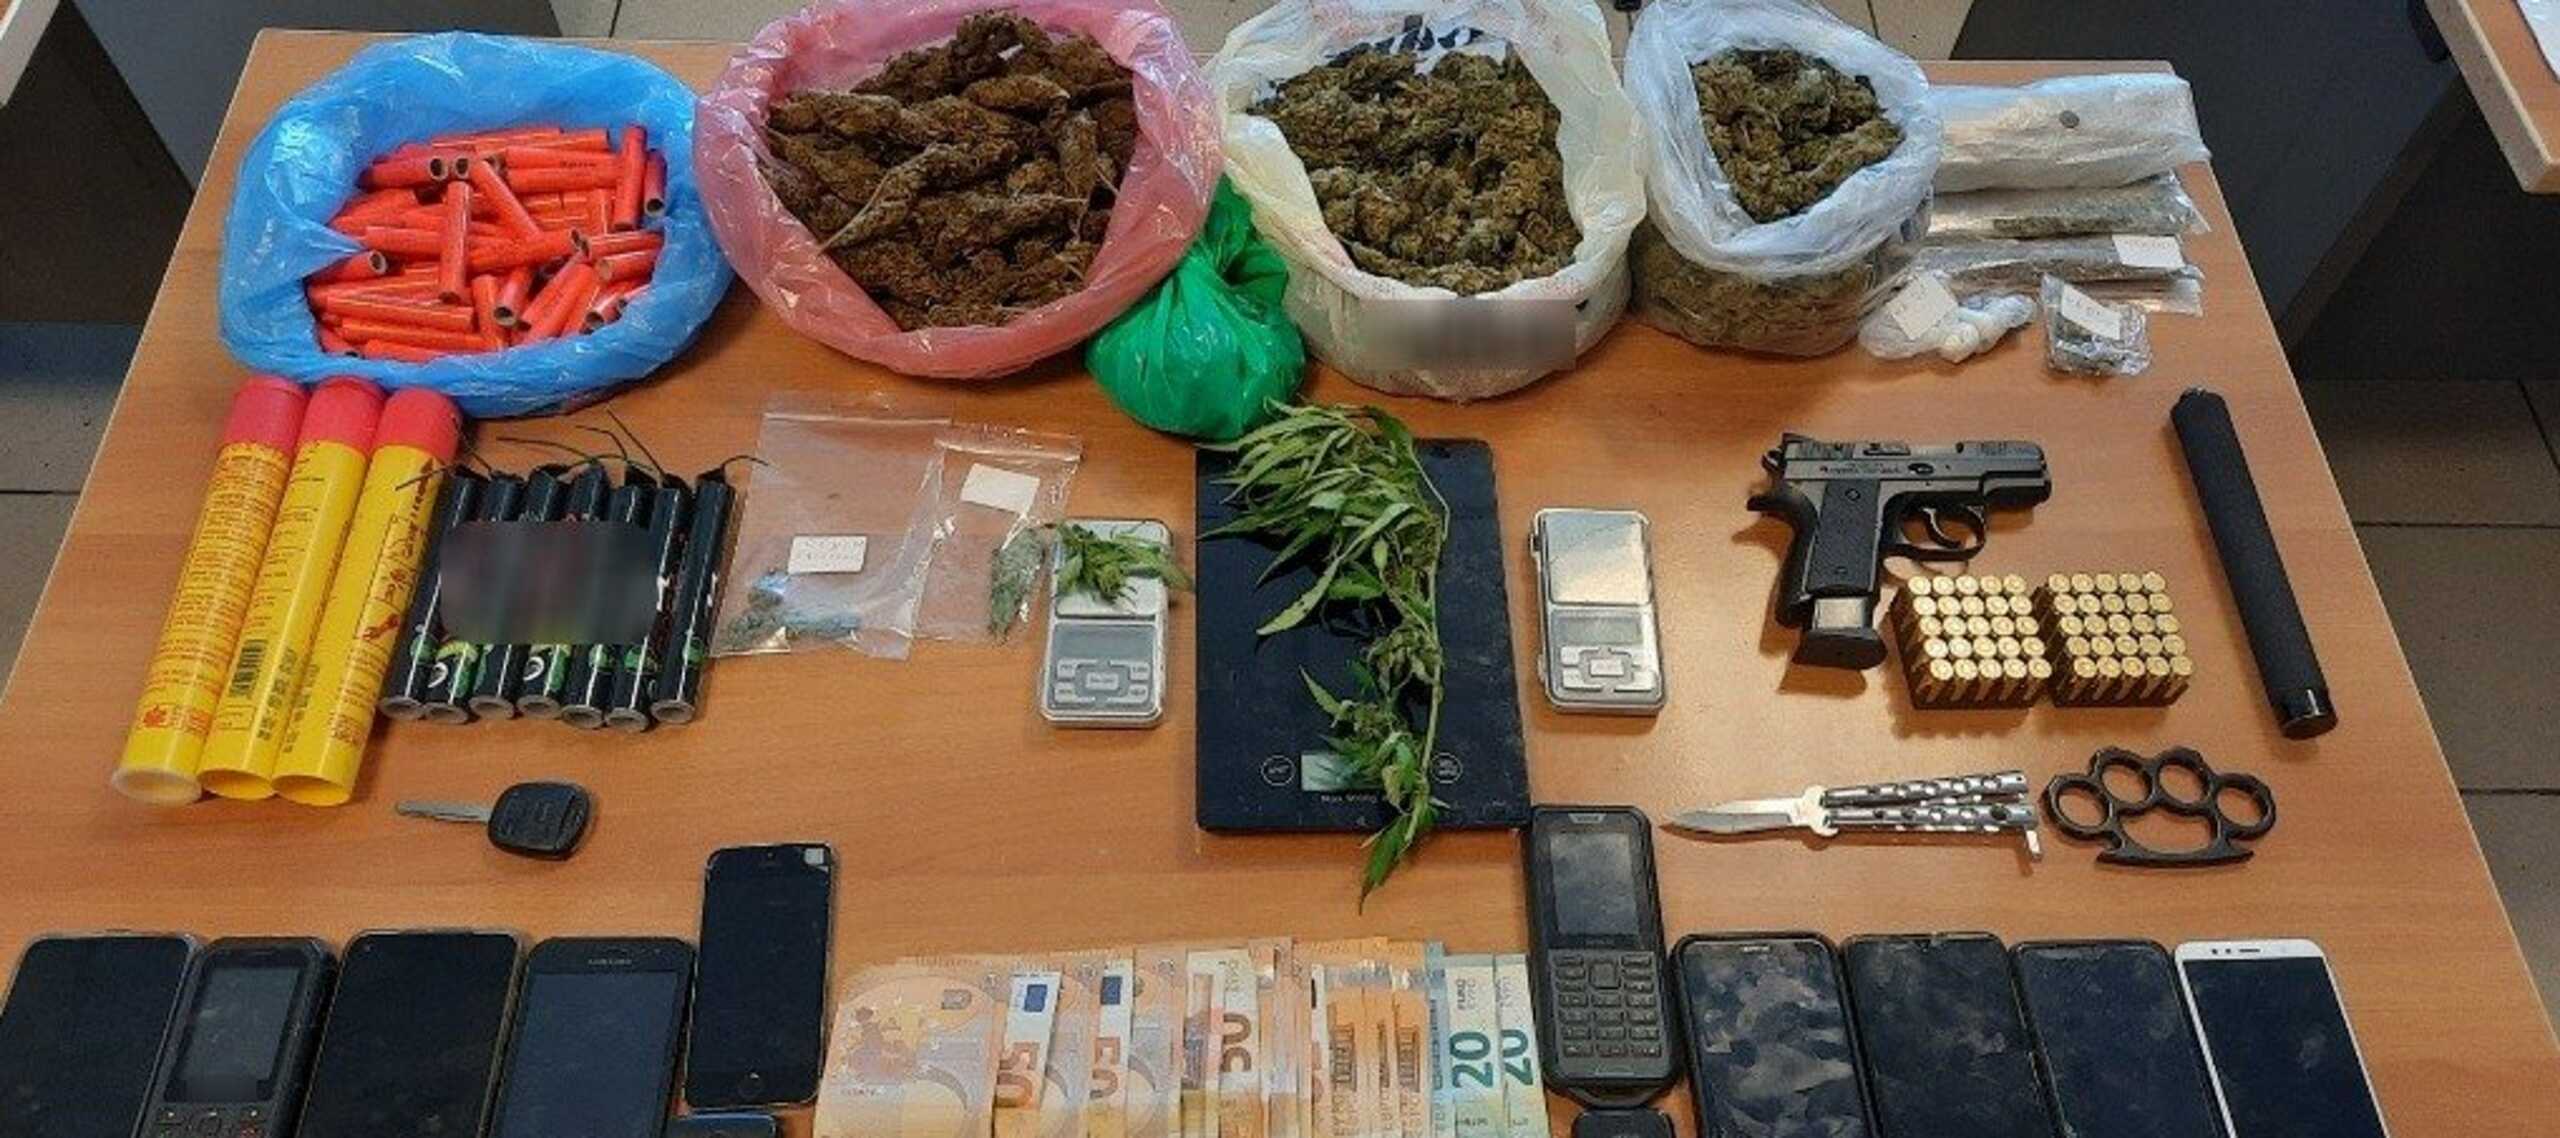 Κρήτη: «Ξεδόντιασαν» σπείρα που διακινούσε ναρκωτικά στο νησί – 11 συλλήψεις, 12 ταυτοποιήσεις